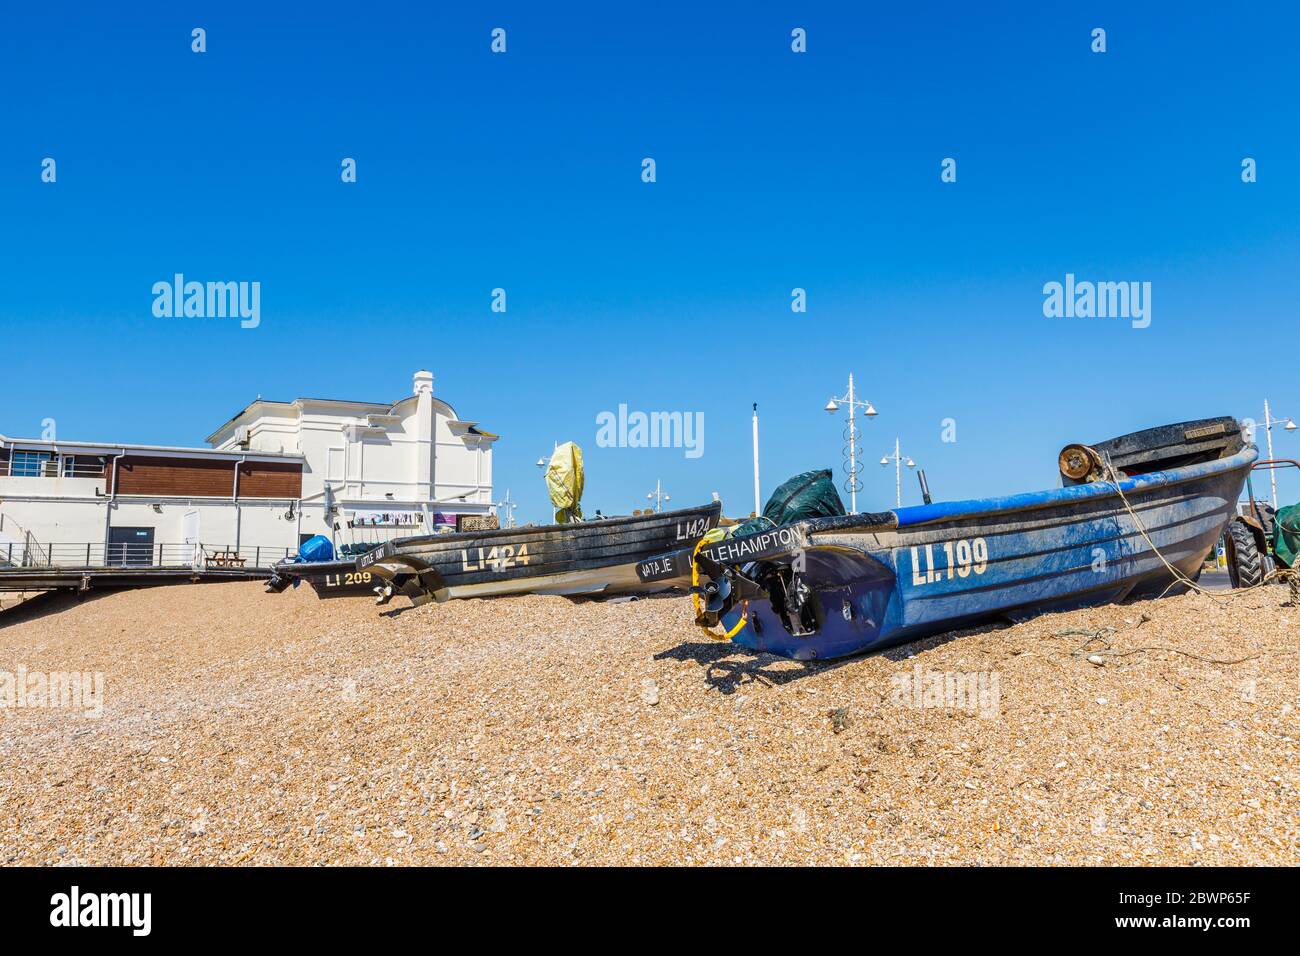 De petits bateaux de pêche ont été pêchés sur la plage de galets et des pots de homard près de la jetée de Bognor Regis, une ville balnéaire de West Sussex, sur la côte sud de l'Angleterre Banque D'Images